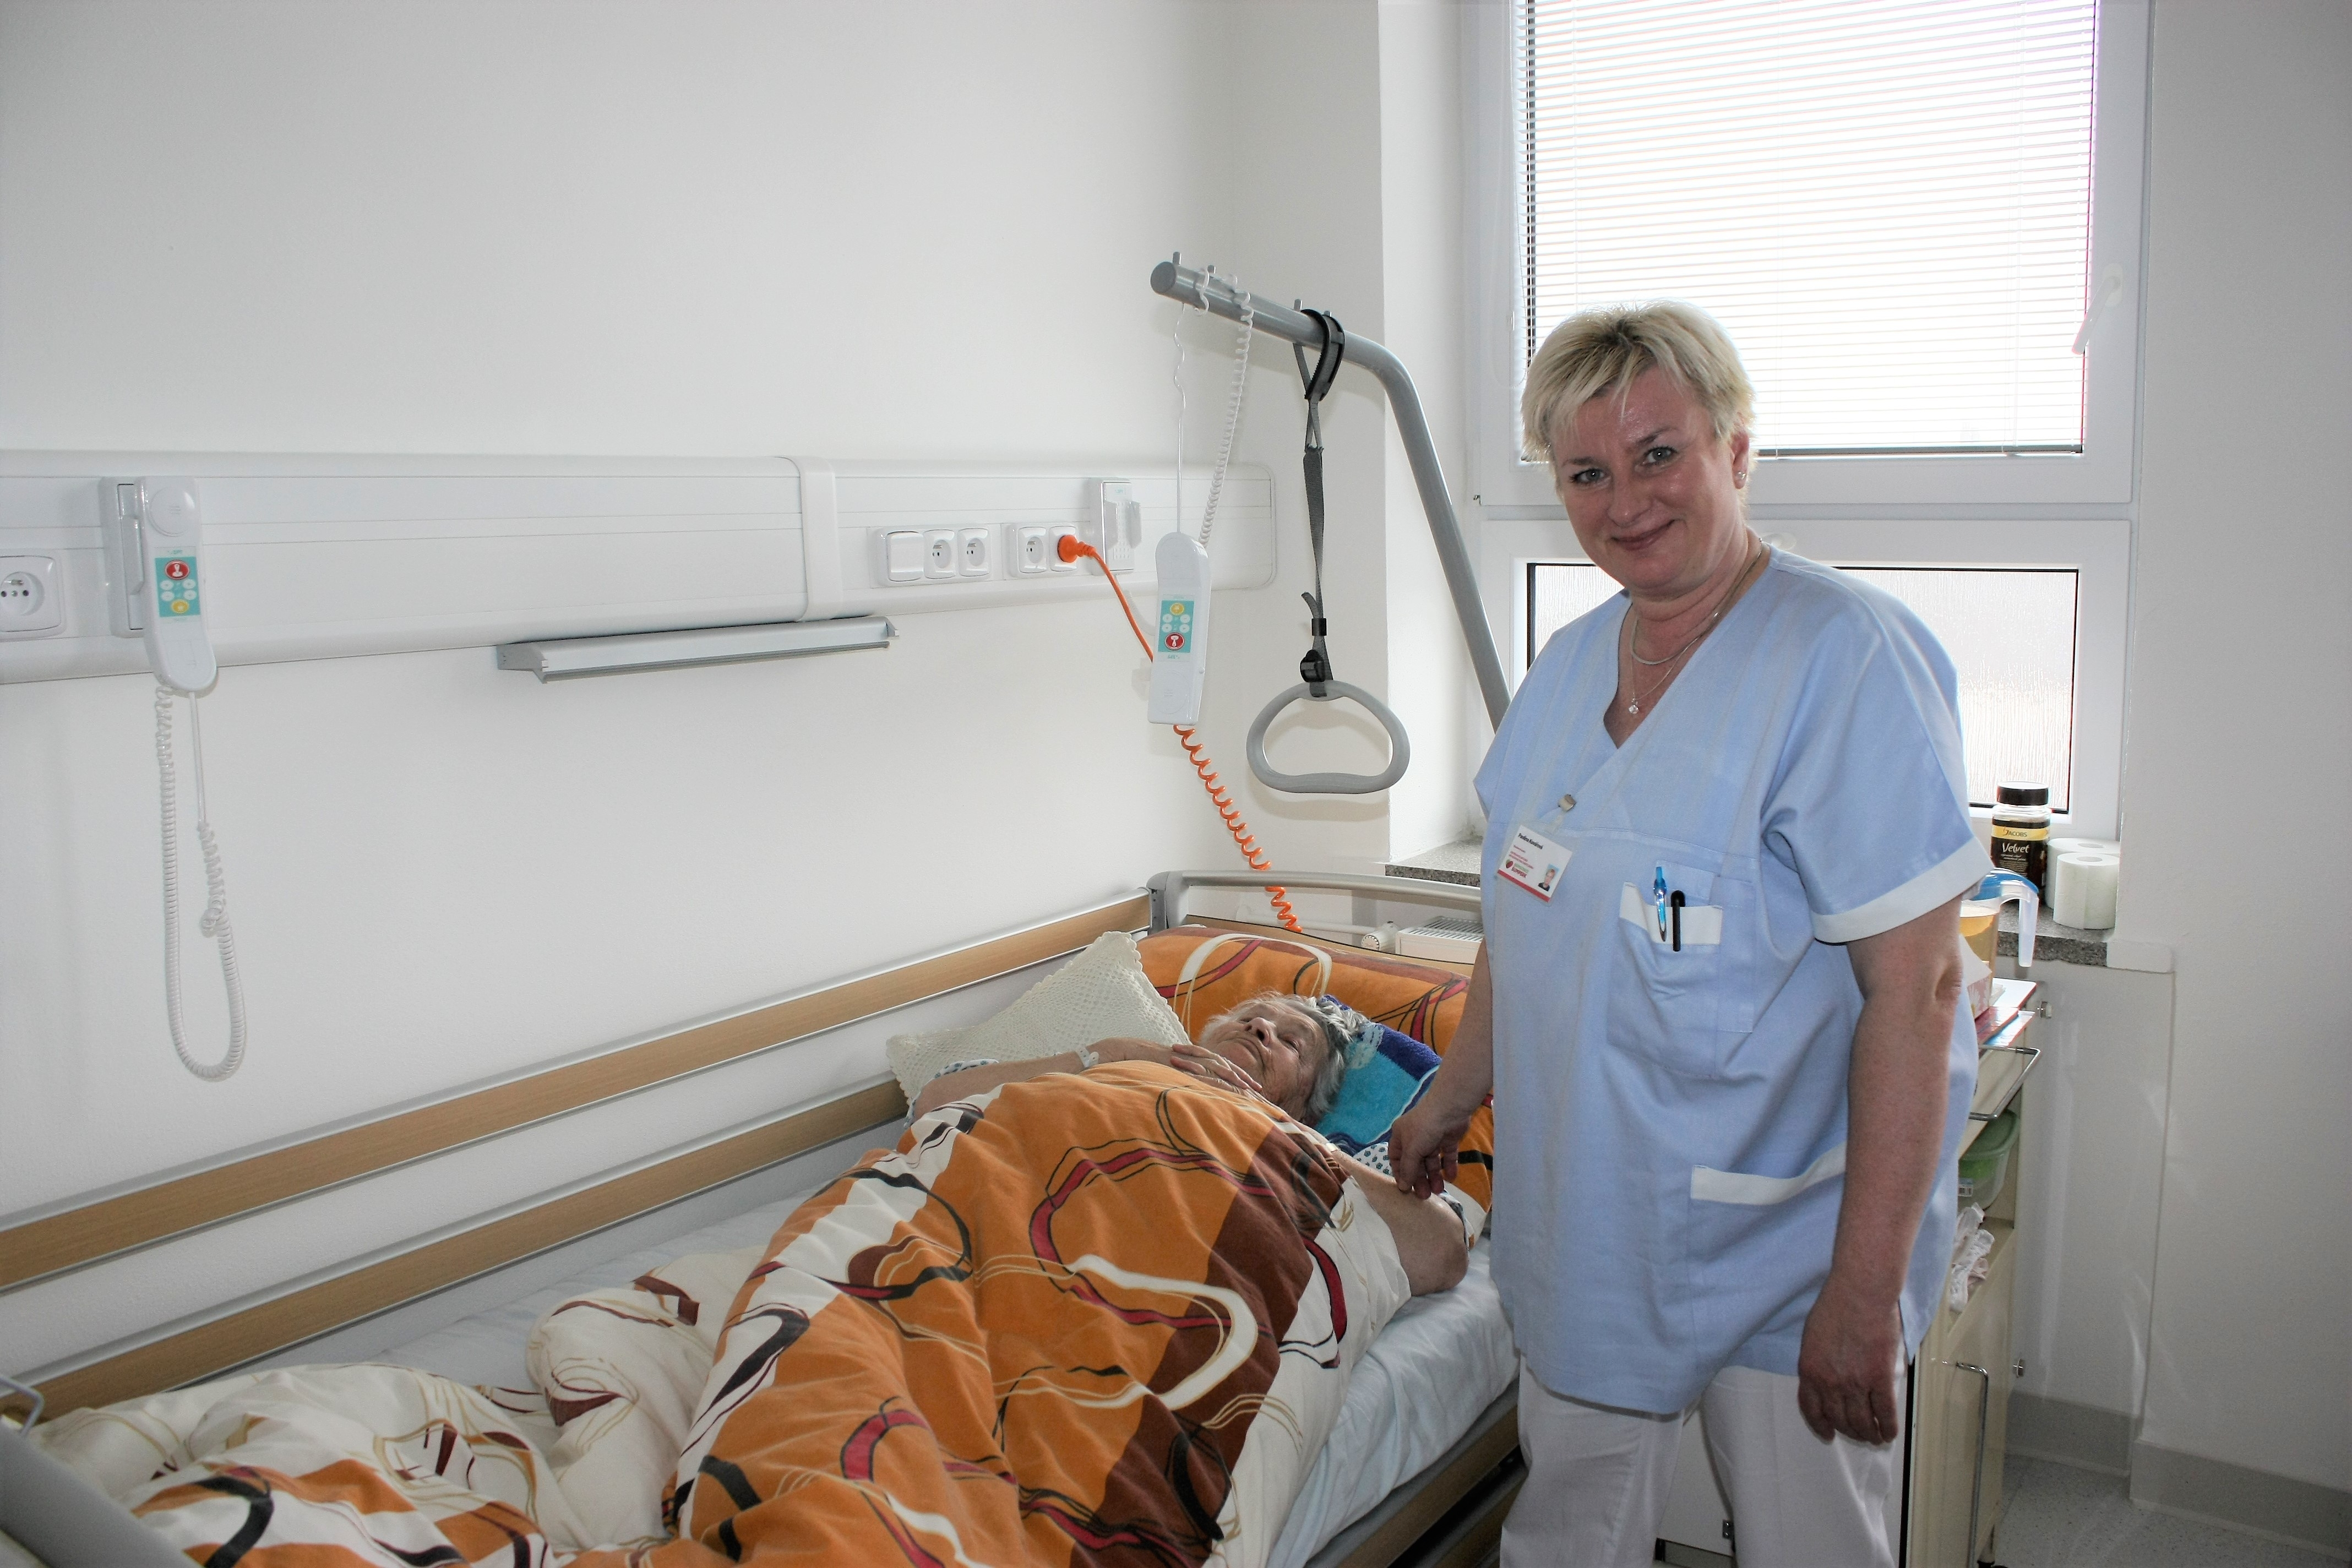 Šumperská nemocnice otevřela v Zábřehu nová lůžka následné péče foto: H. Hanke - NŠ